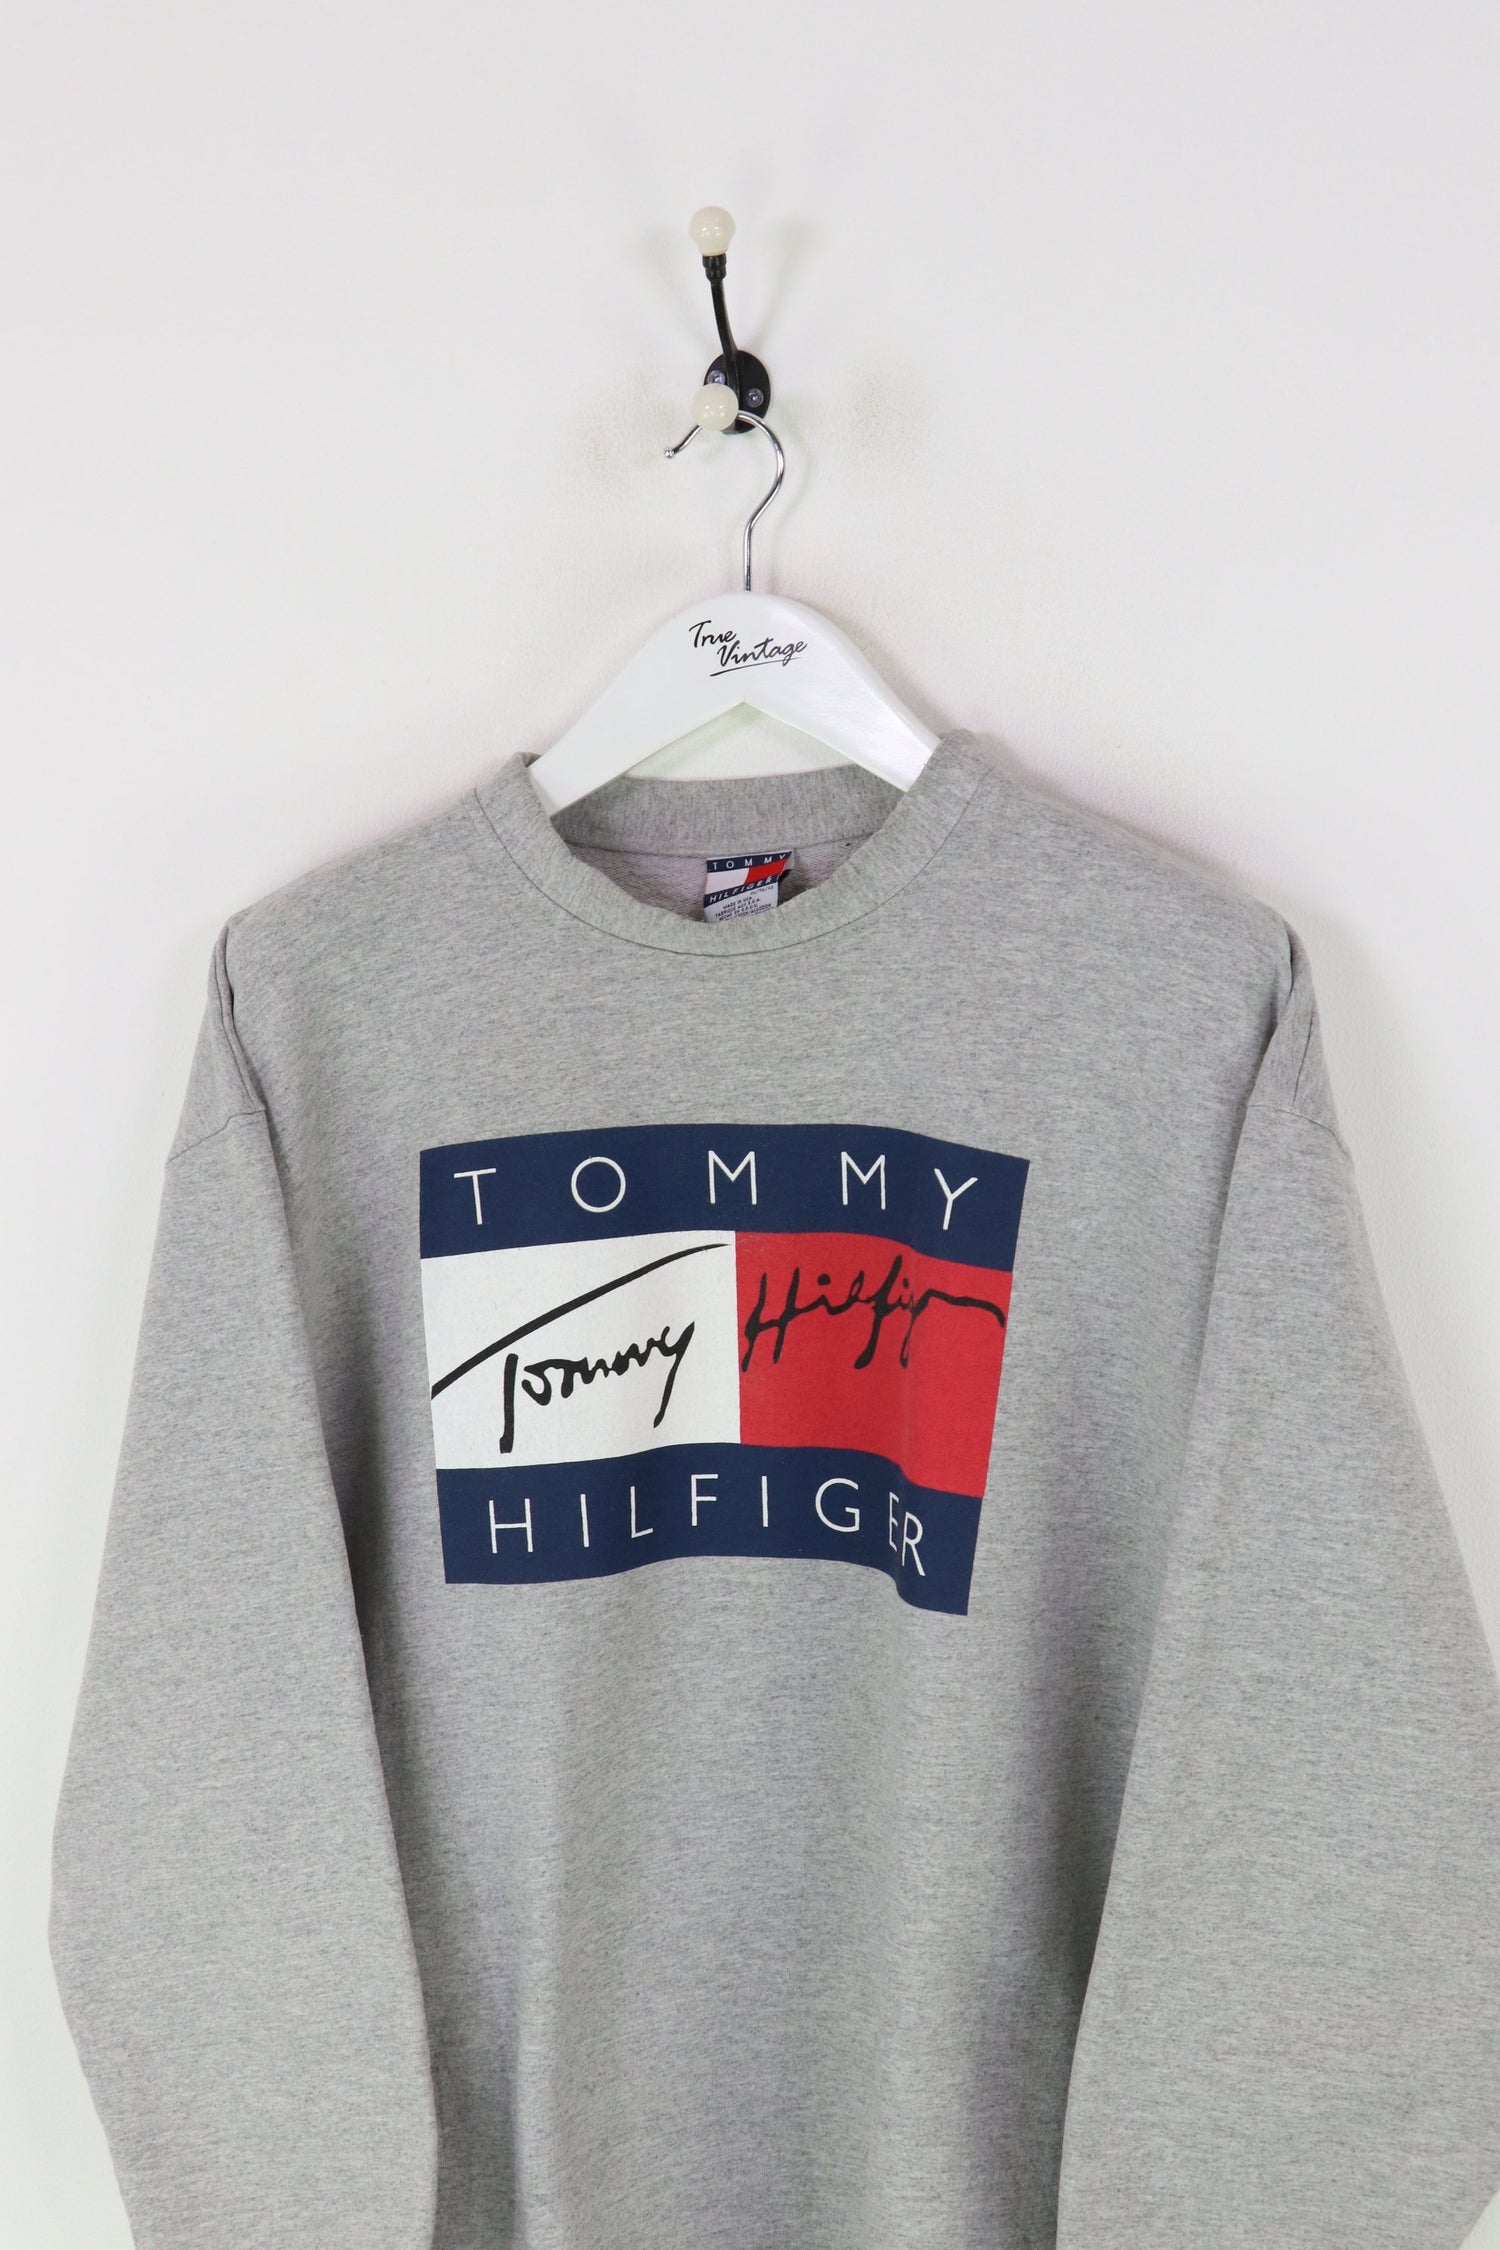 Tommy Hilfiger Sweatshirt Grey XL